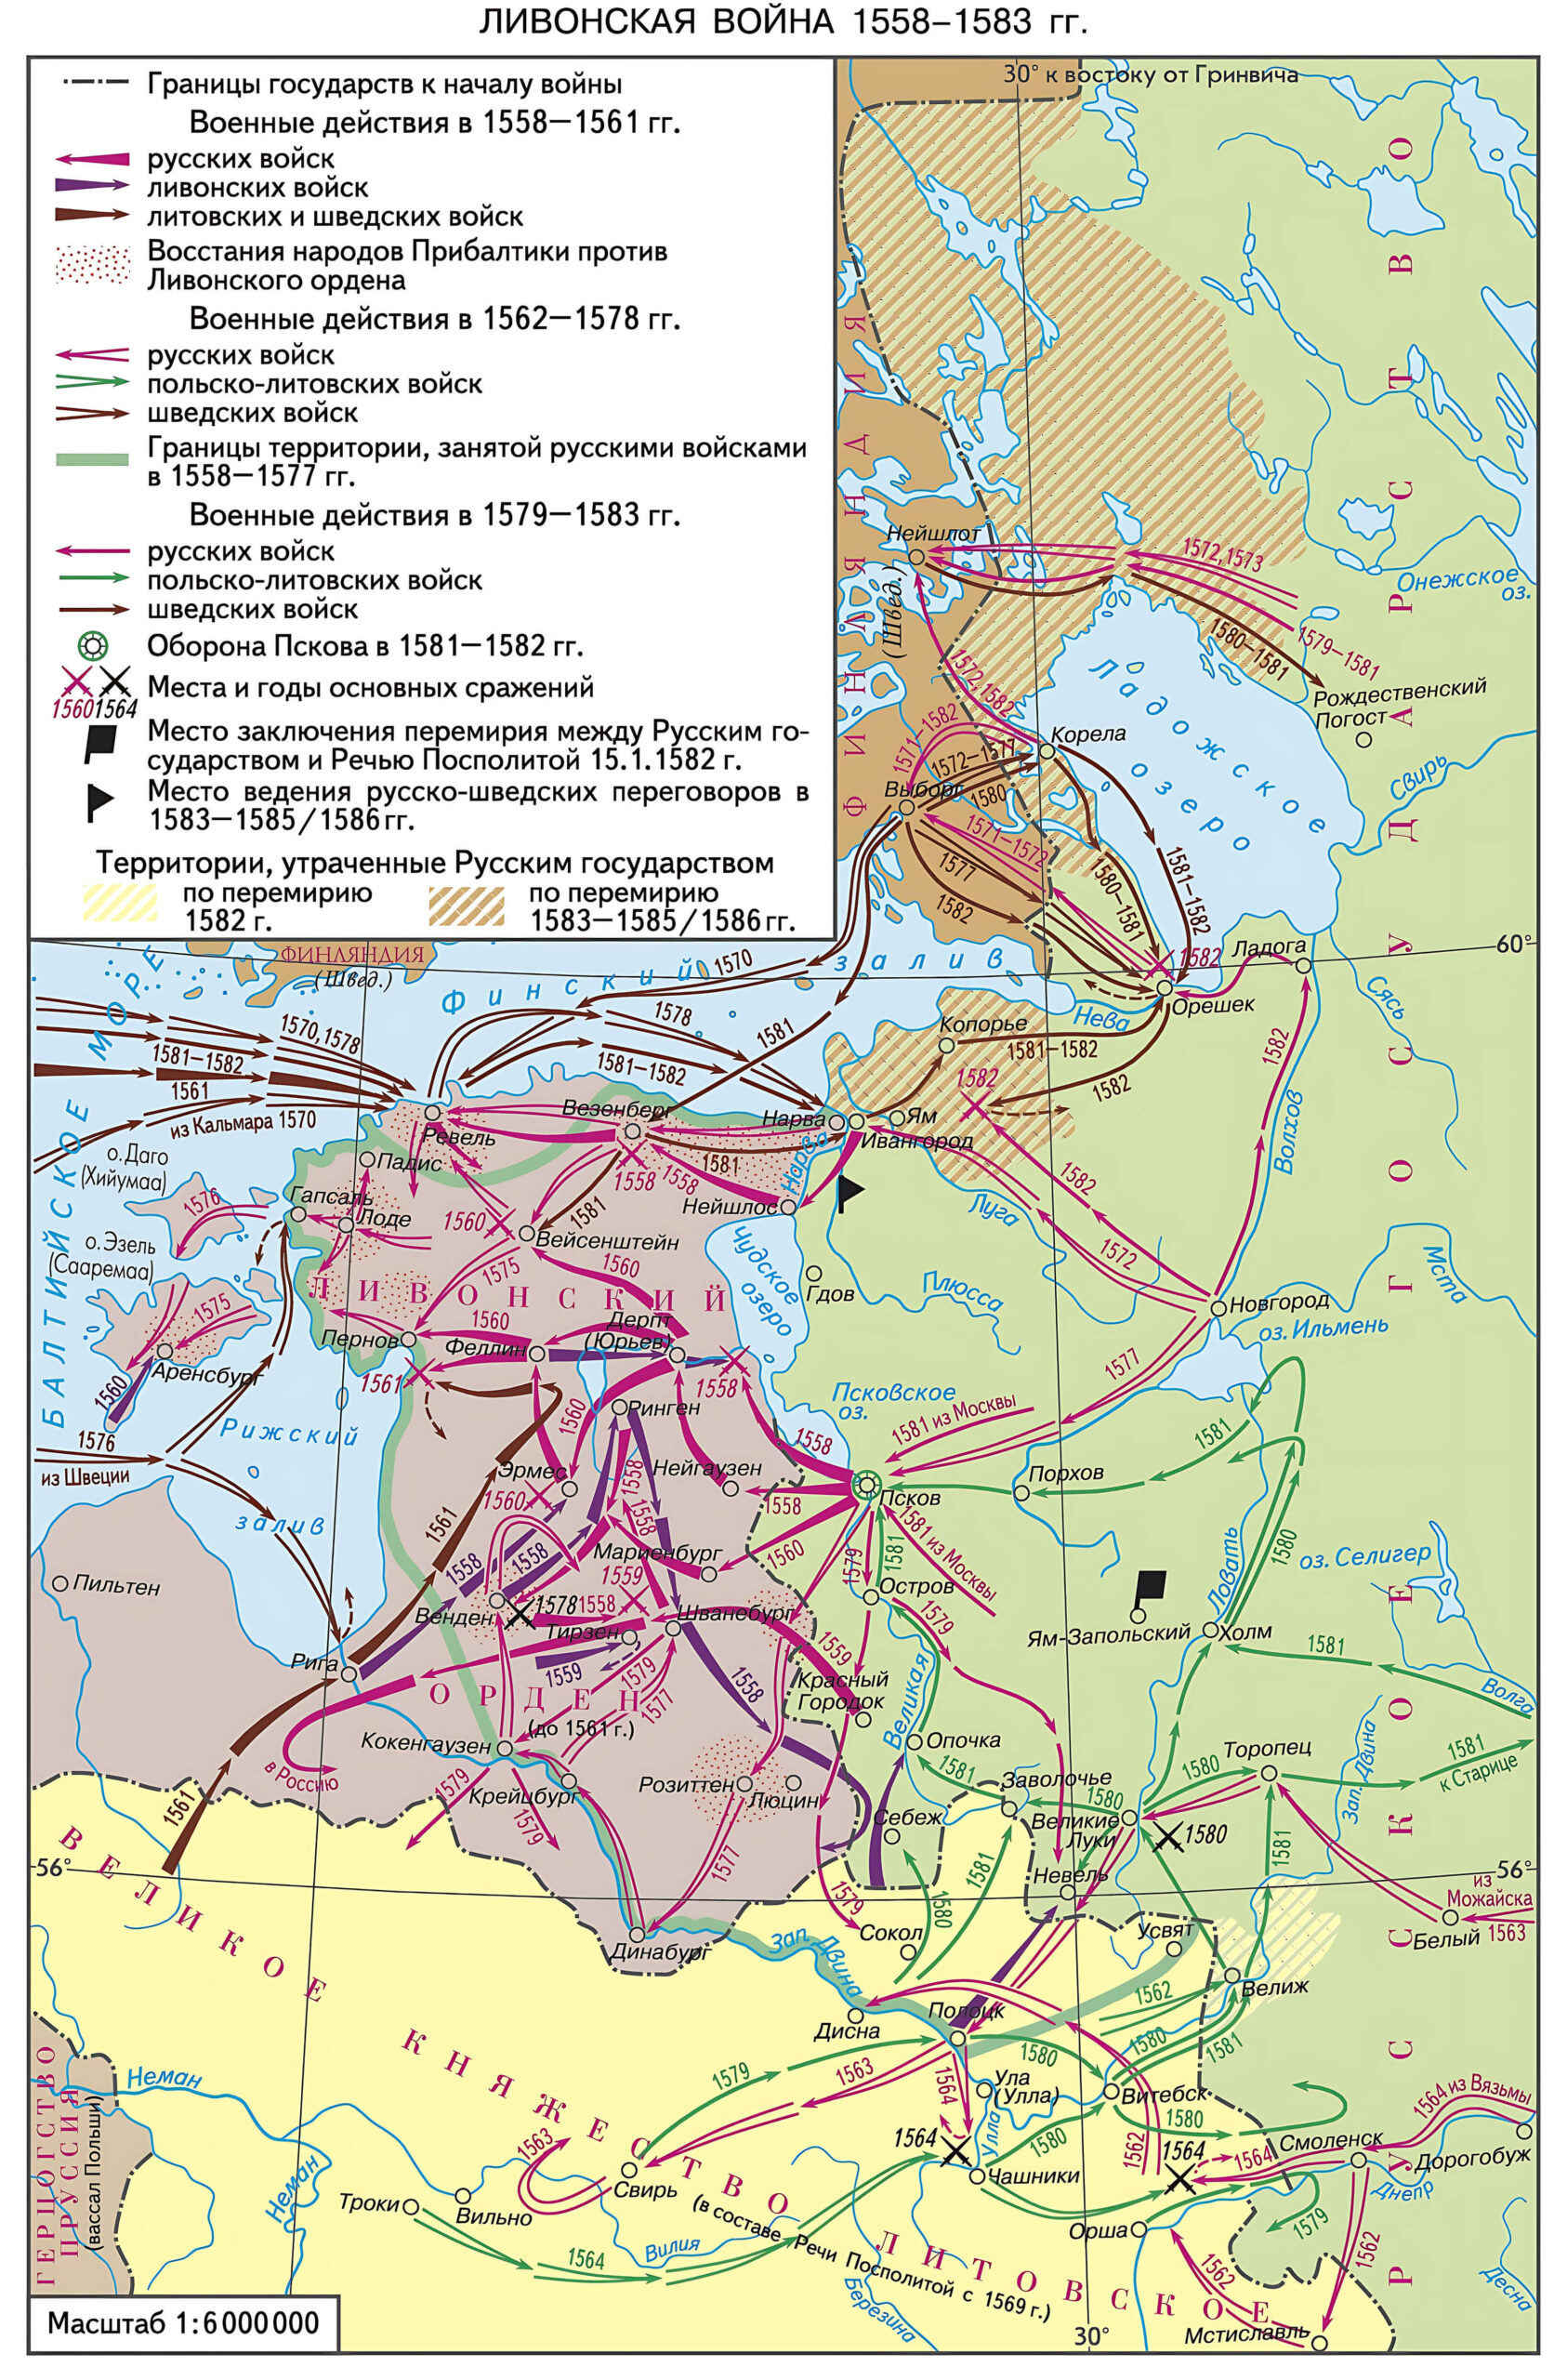 Карта боевых действий Ливонской войны